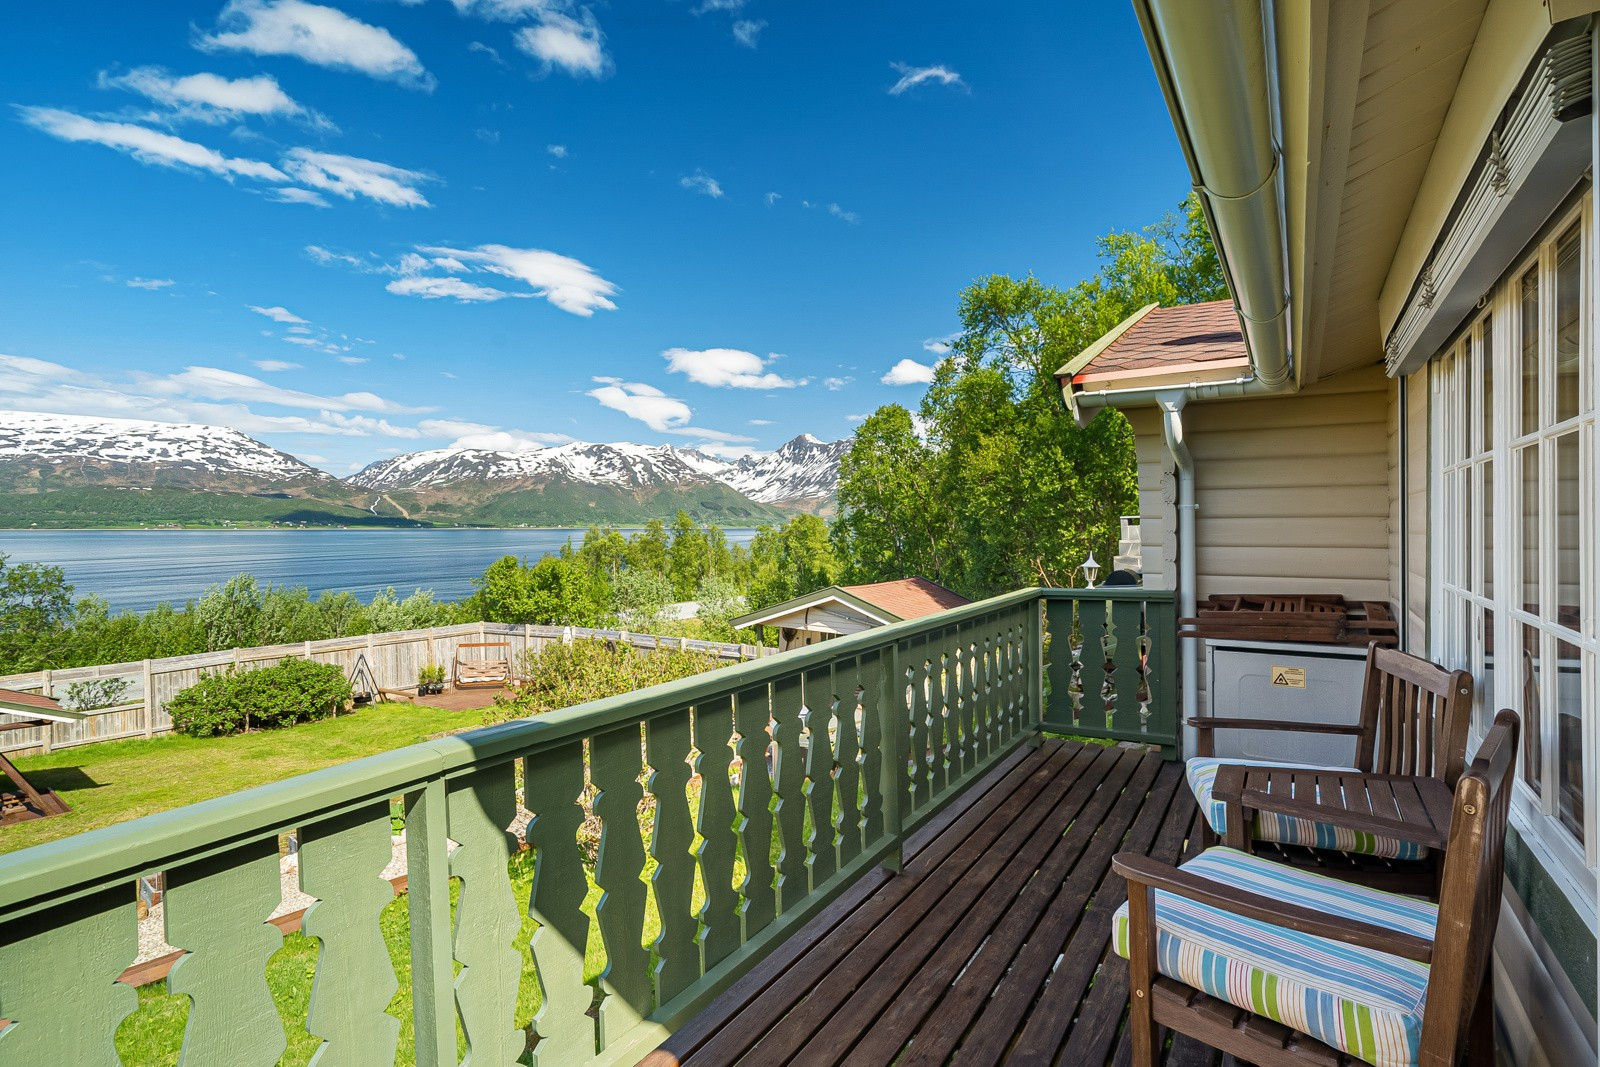 Fra stuen er det utgang til en solrik veranda hvor man kan nyte den fantastiske utsikten!